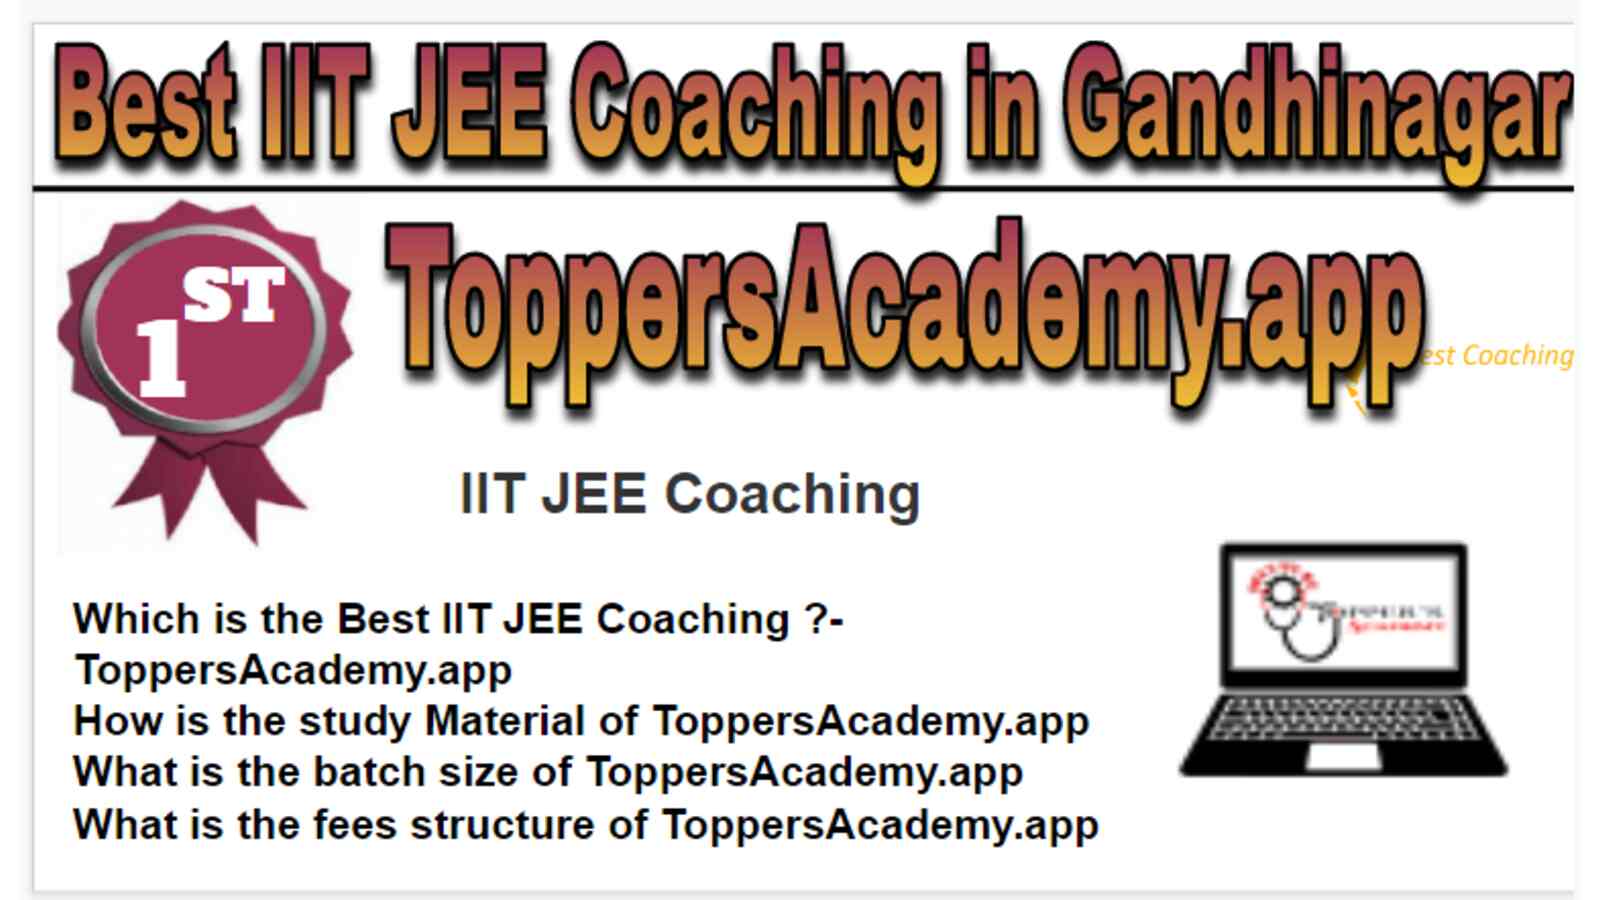 Rank 1 Best IIT JEE Coaching in Gandhinagar